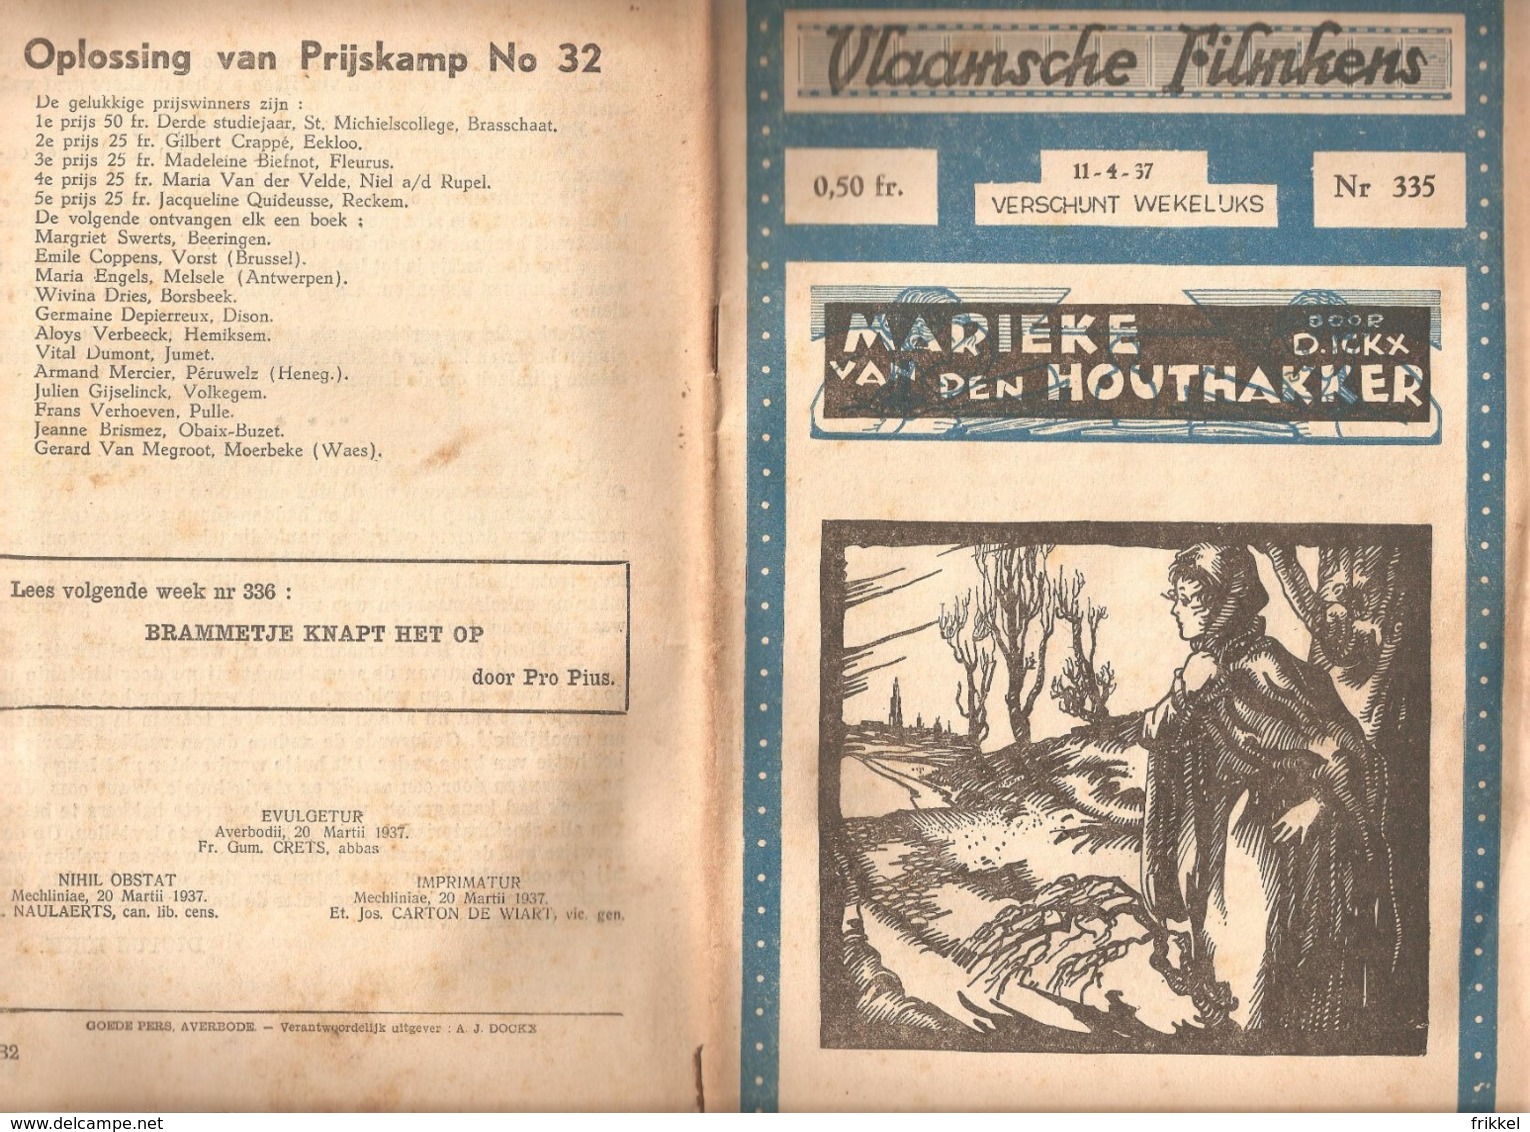 Vlaamsche Filmkens 335 Marieke Van Den Houthakker D Ickx 1937 GROOT FORMAAT: 16x23,5cm Averbode's Jeugbibliotheek - Antiguos